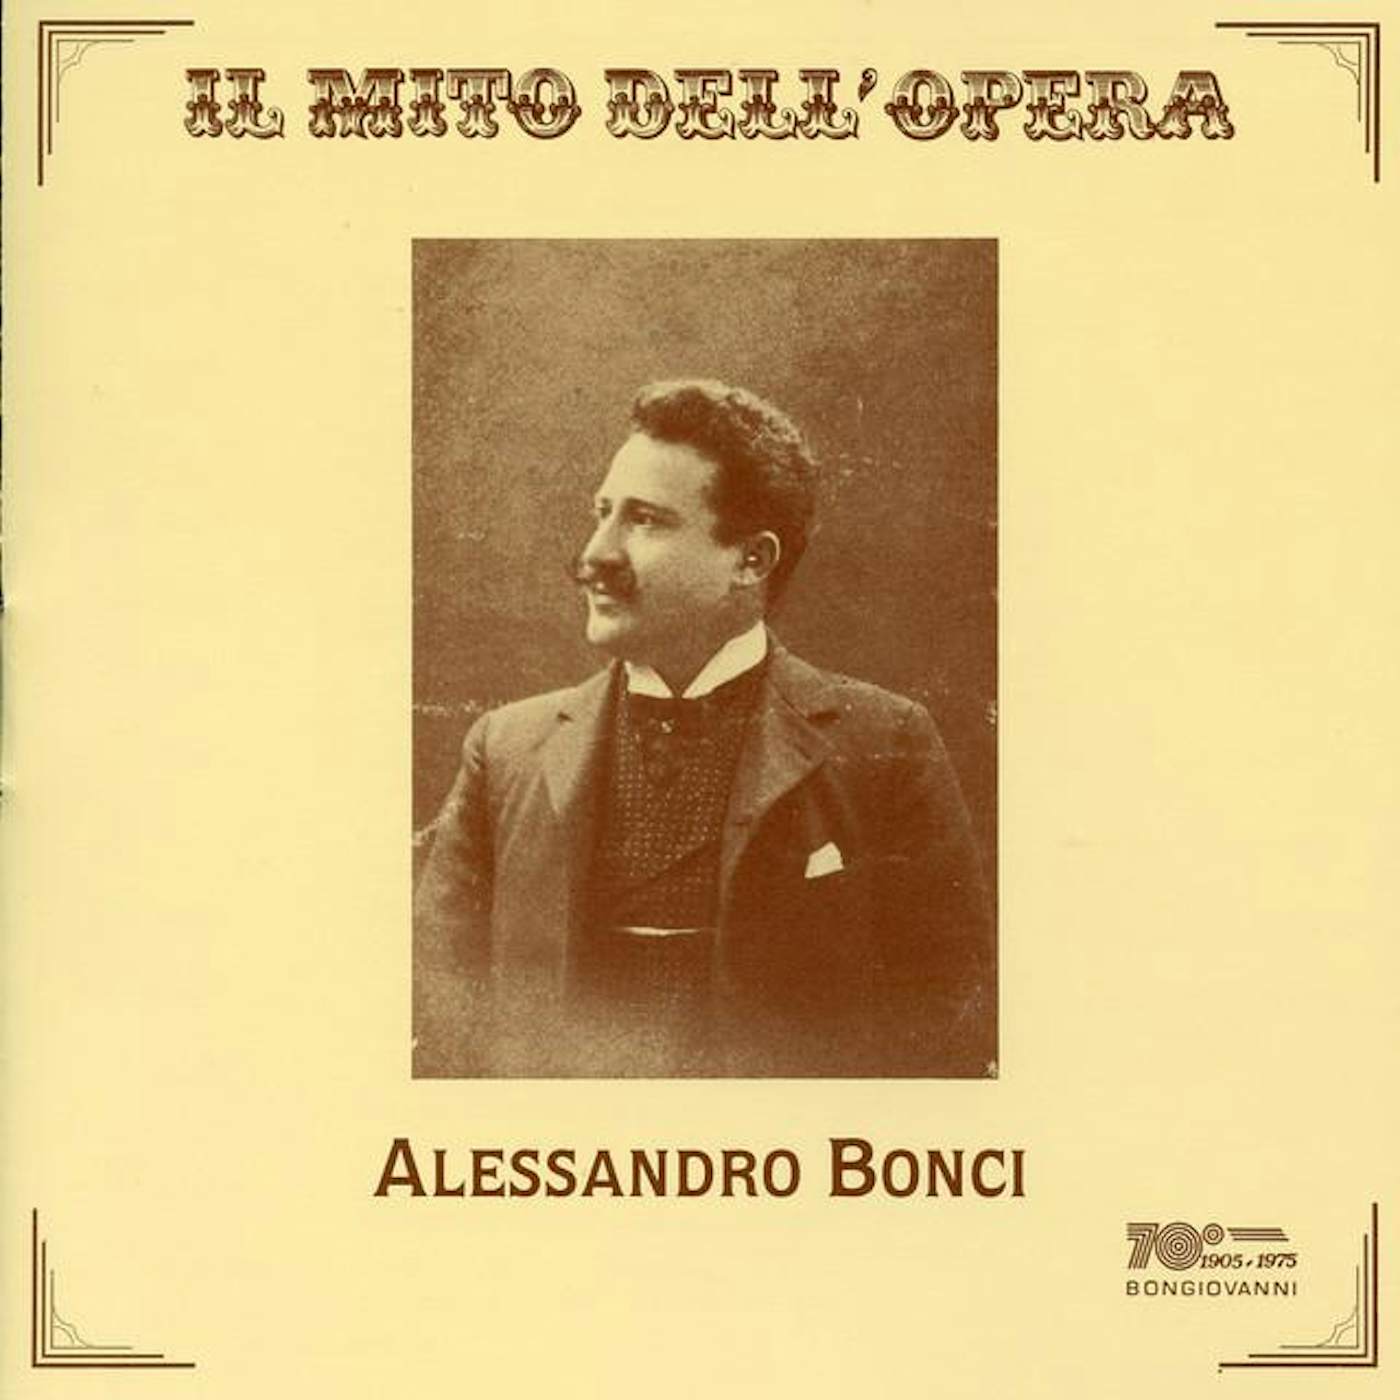 Alessandro Bonci